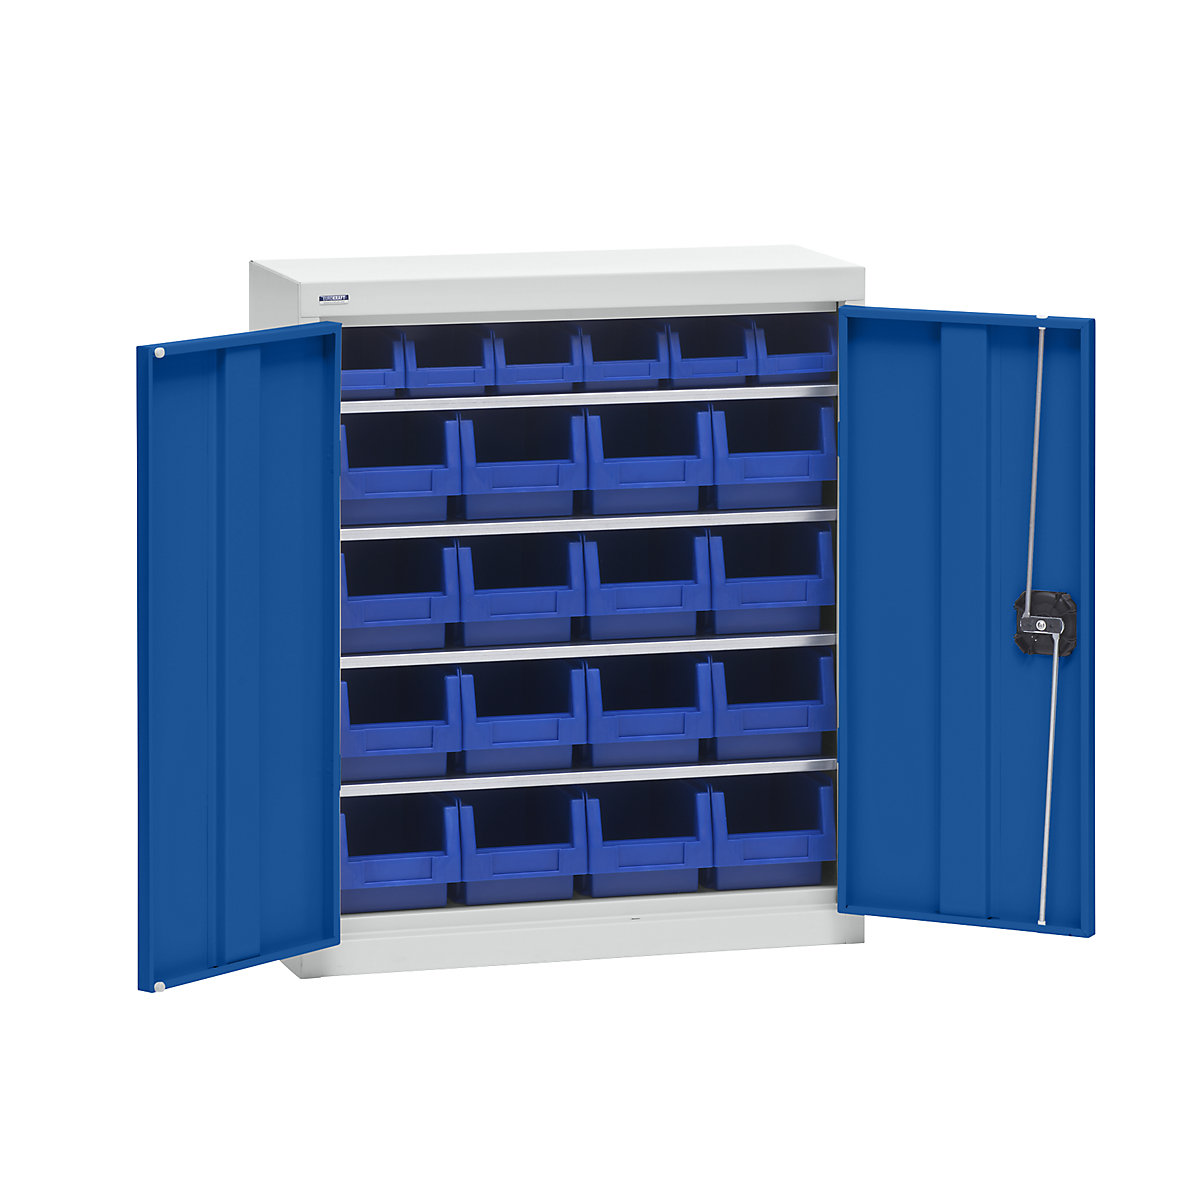 Omara za material s skladiščnimi posodami – eurokraft pro, višina 780 mm, 4 police, svetlo siva / encijan modra-7